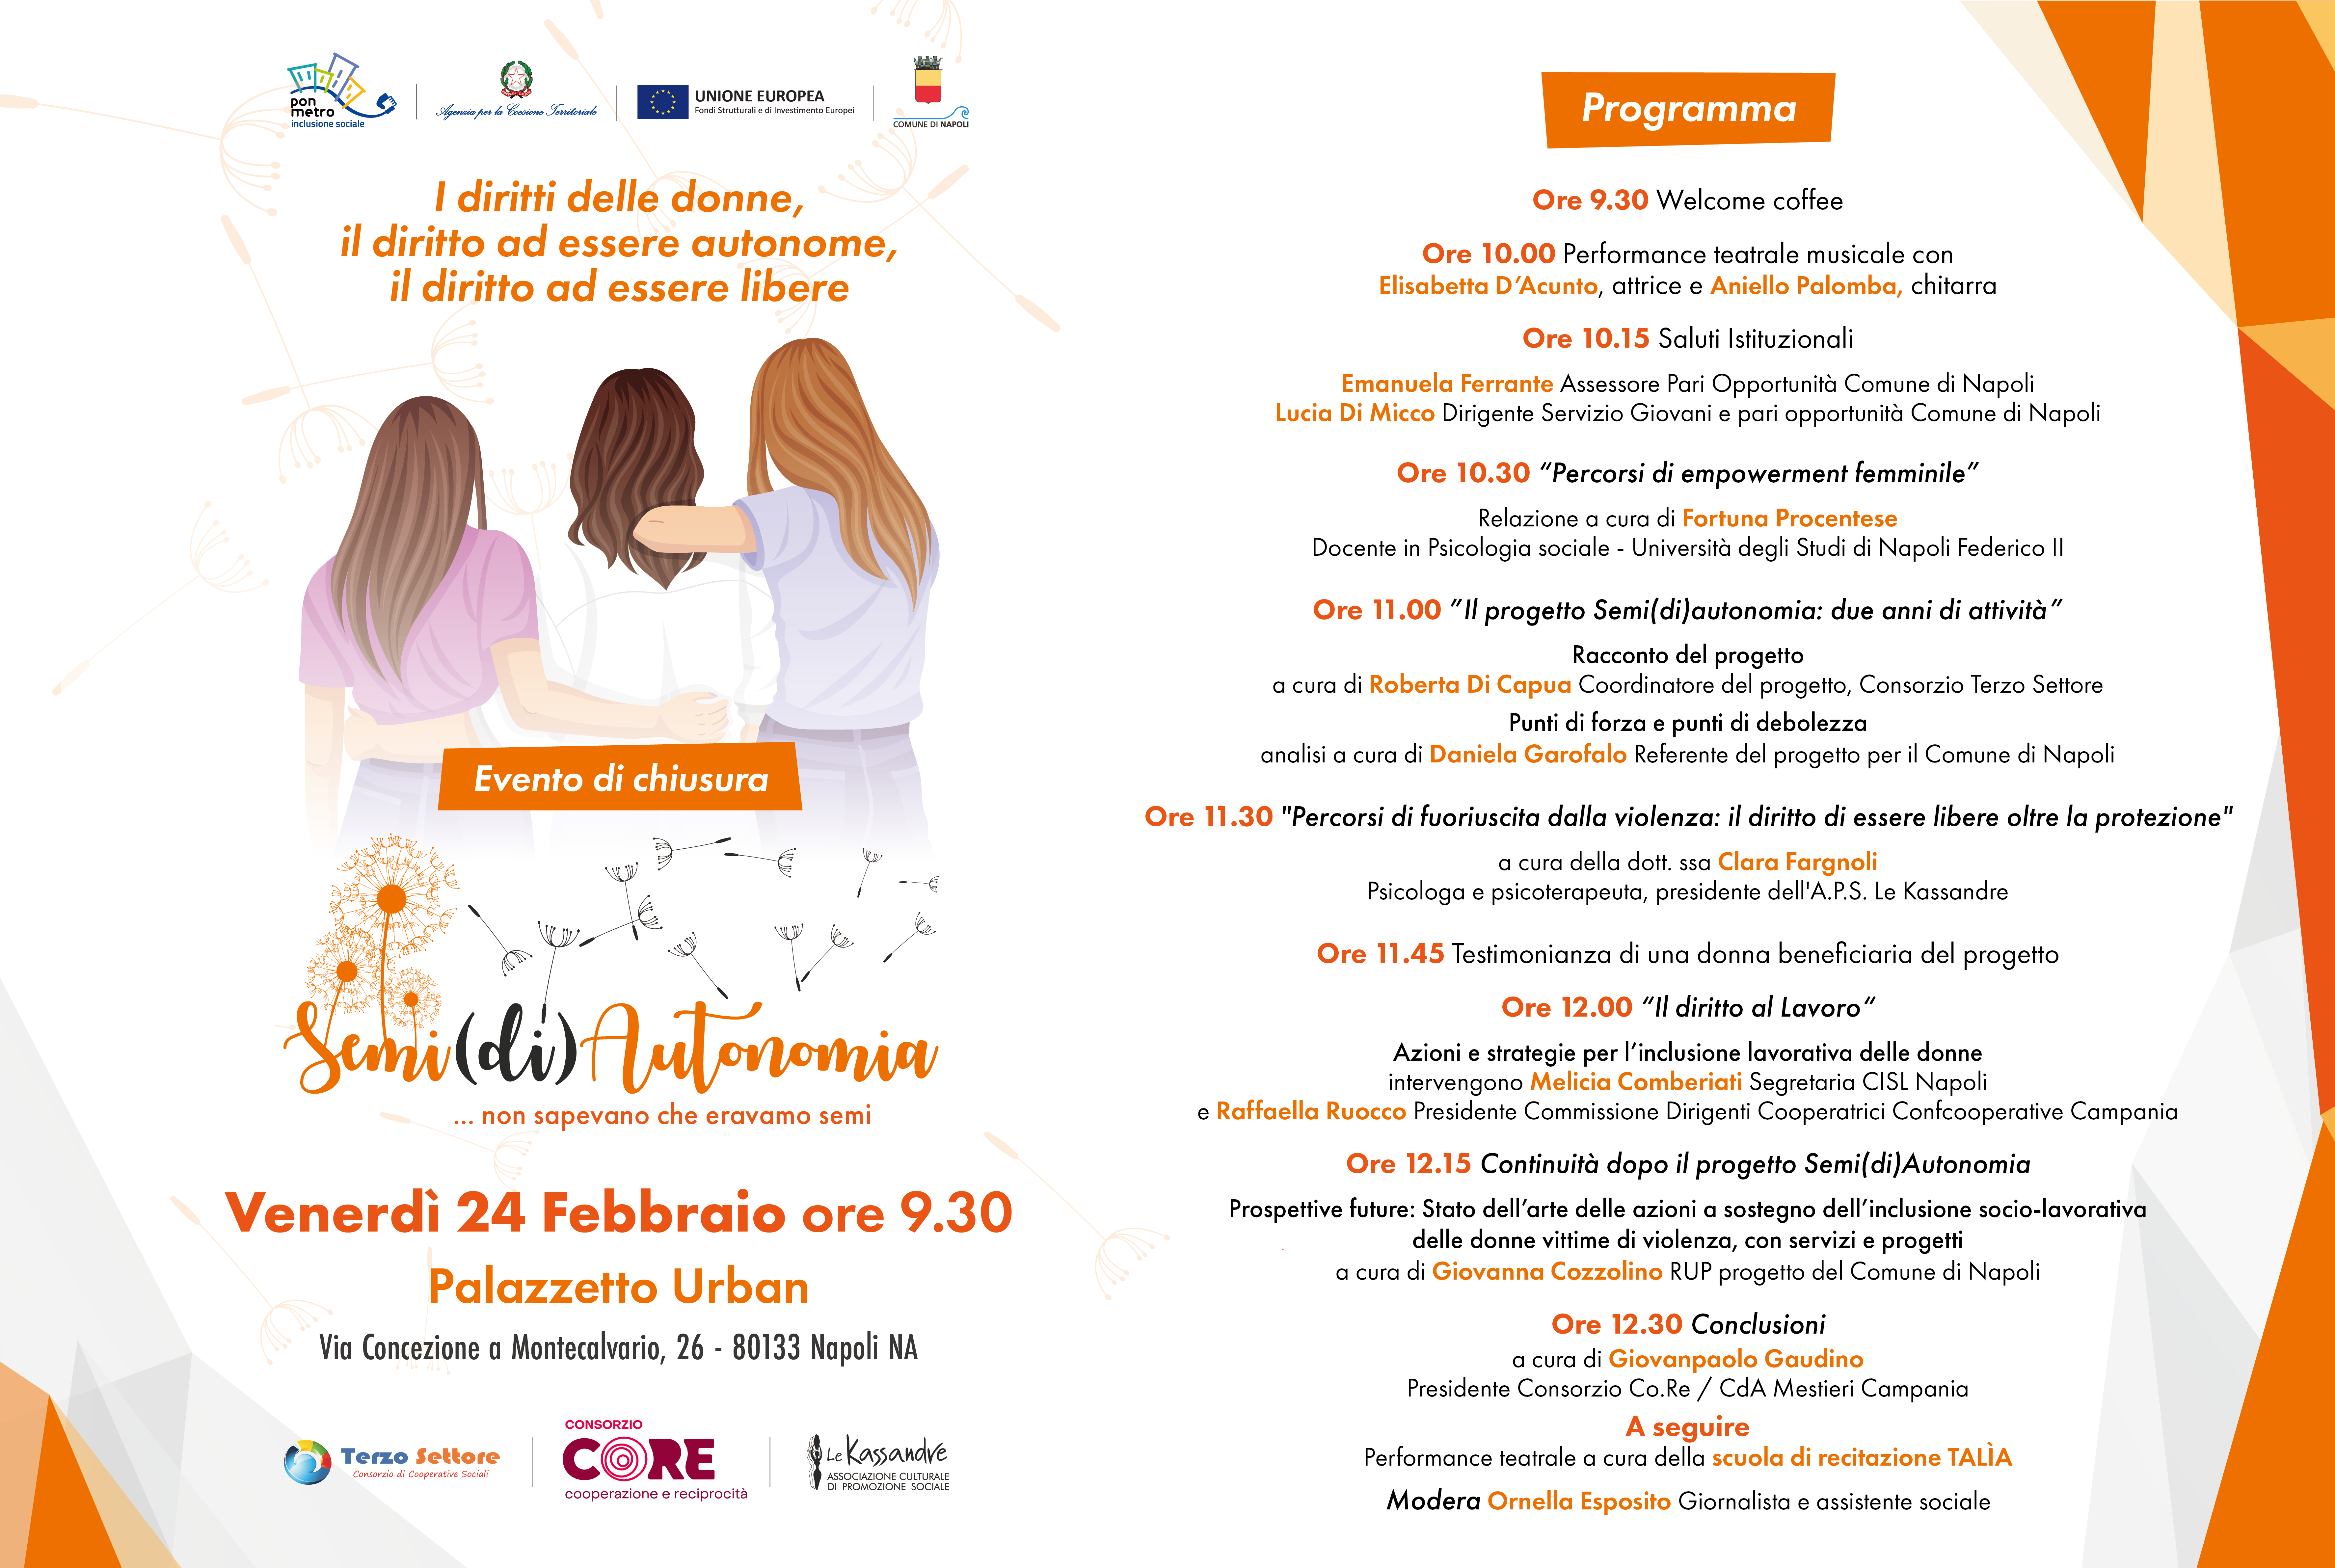 Progetto Semi(di)Autonomia: venerdì 24 febbraio alle 9.30 l’evento di chiusura al Palazzetto Urban di Napoli